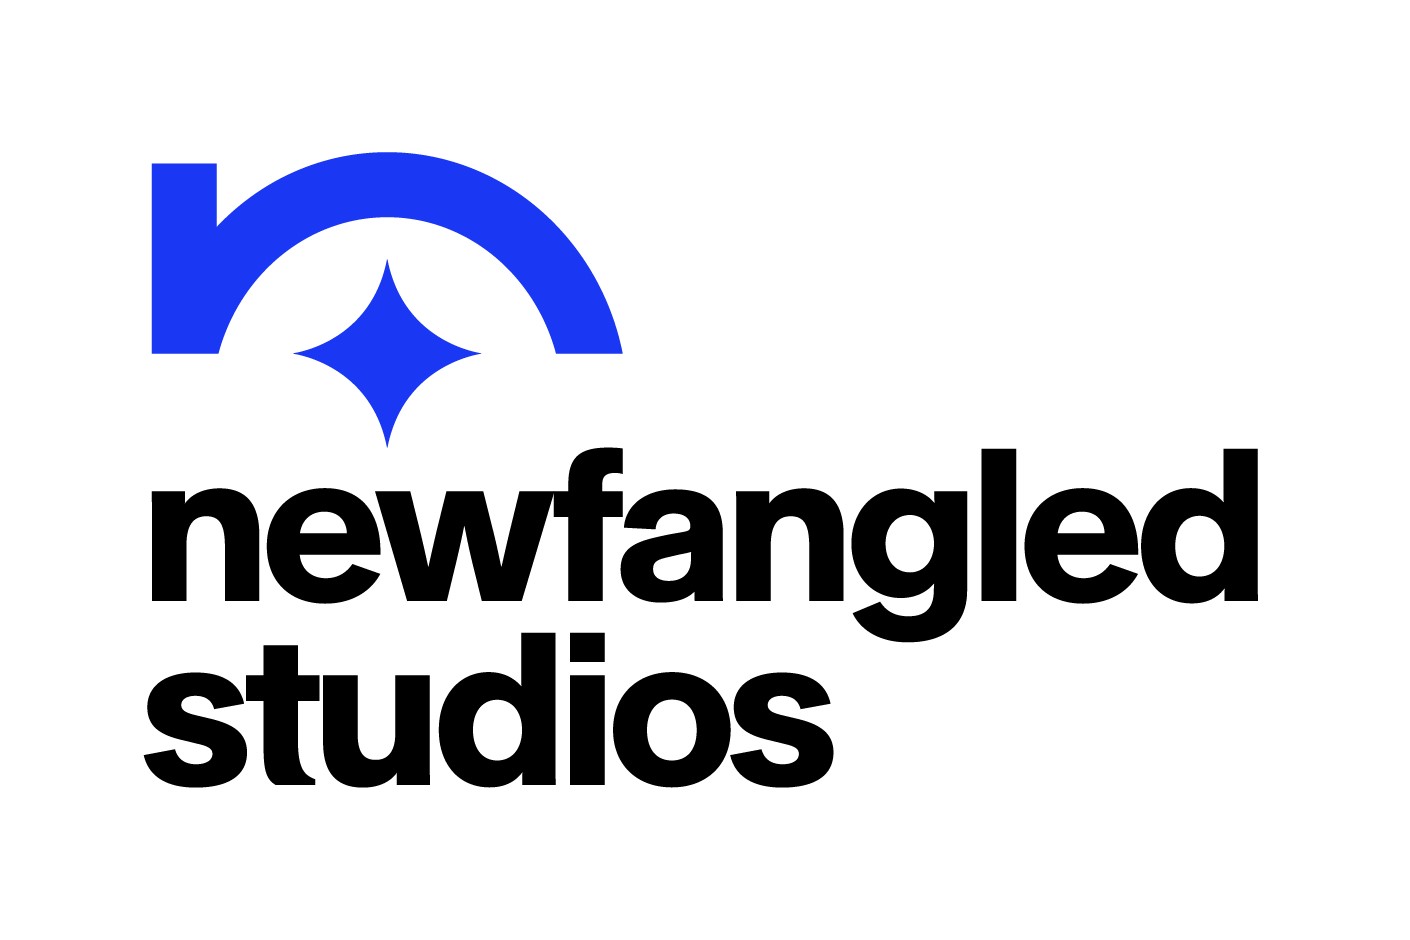 Newfangled Studios